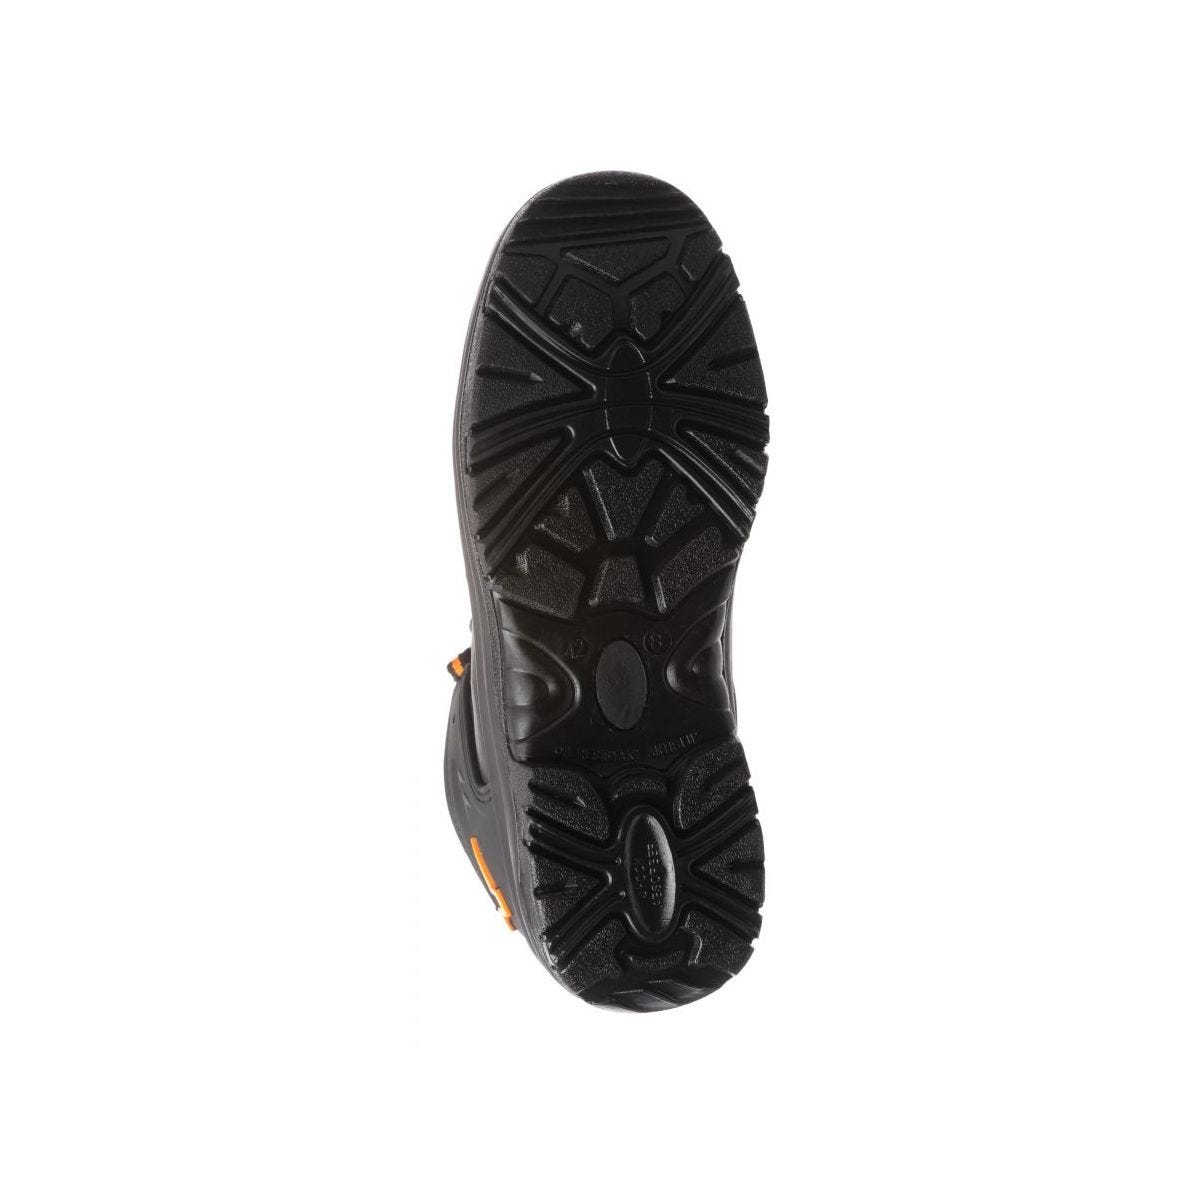 Chaussures de sécurité basses S3 SRC OPAL composite Noir - Coverguard - Taille 42 4